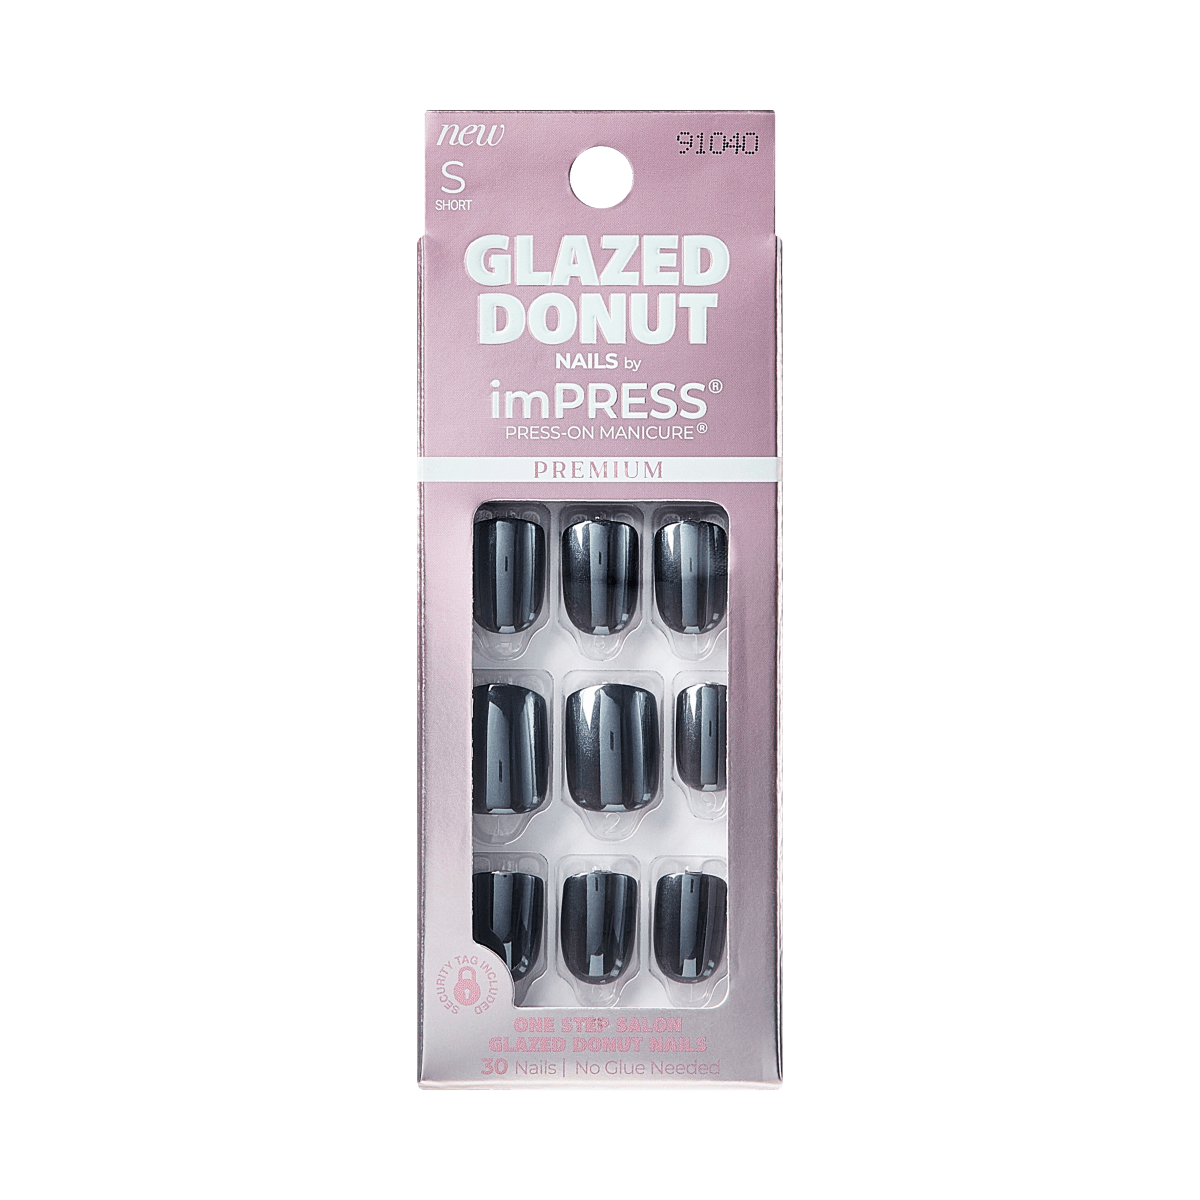 imPRESS Glazed Donut Press-On Manicure - Onyx Glazed